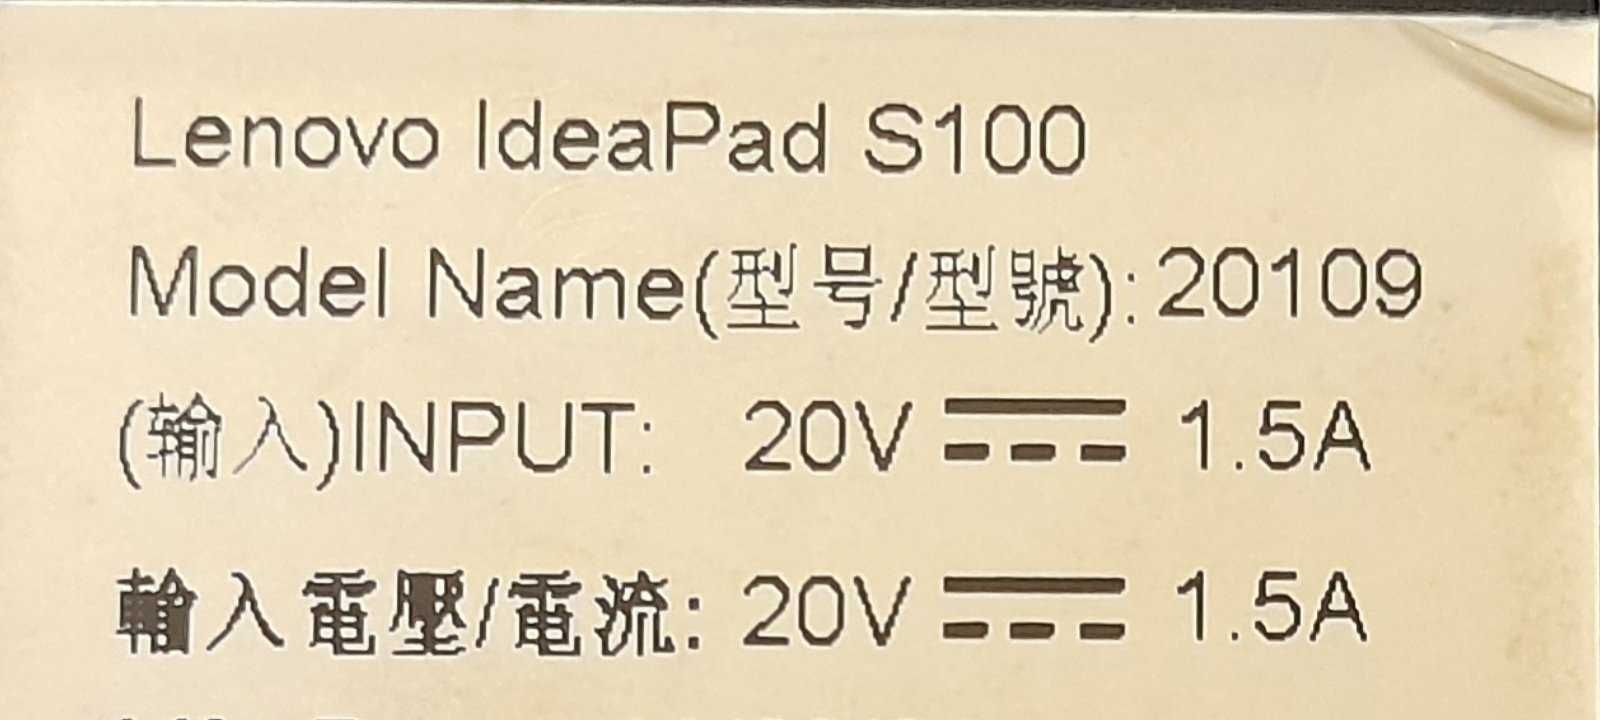 Lenovo Ideapad s100 (model 20109)